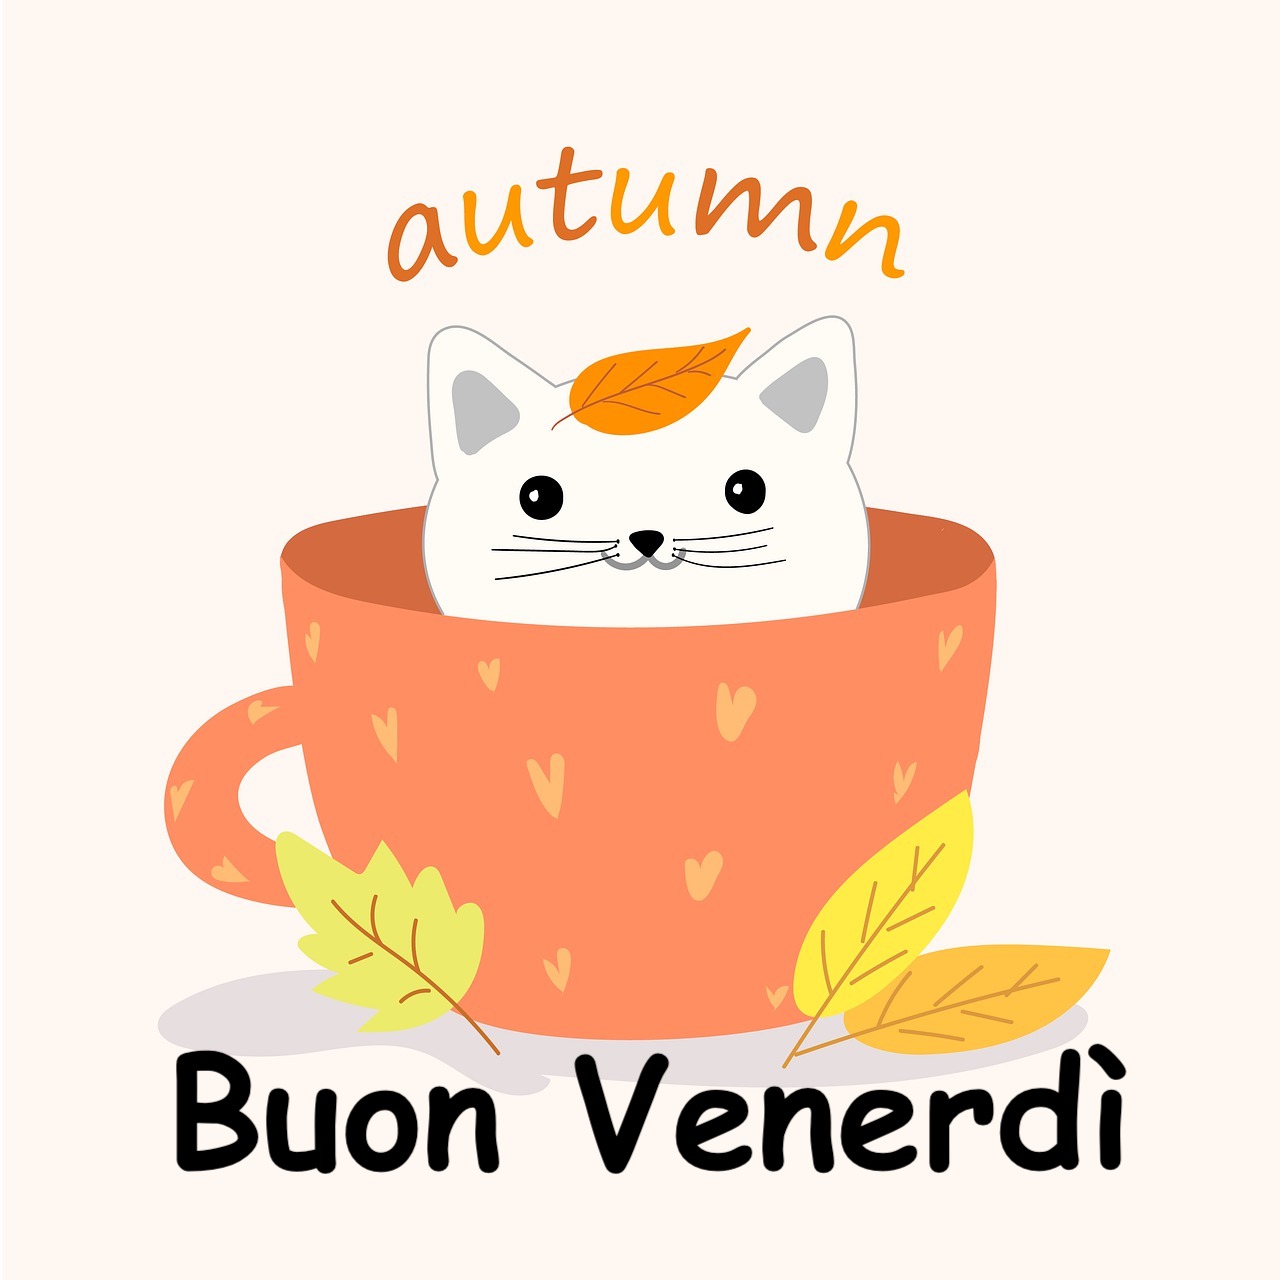  disegno di una tazza di caffè con un gattino dentro e la scritta autumn sopra il gatto  